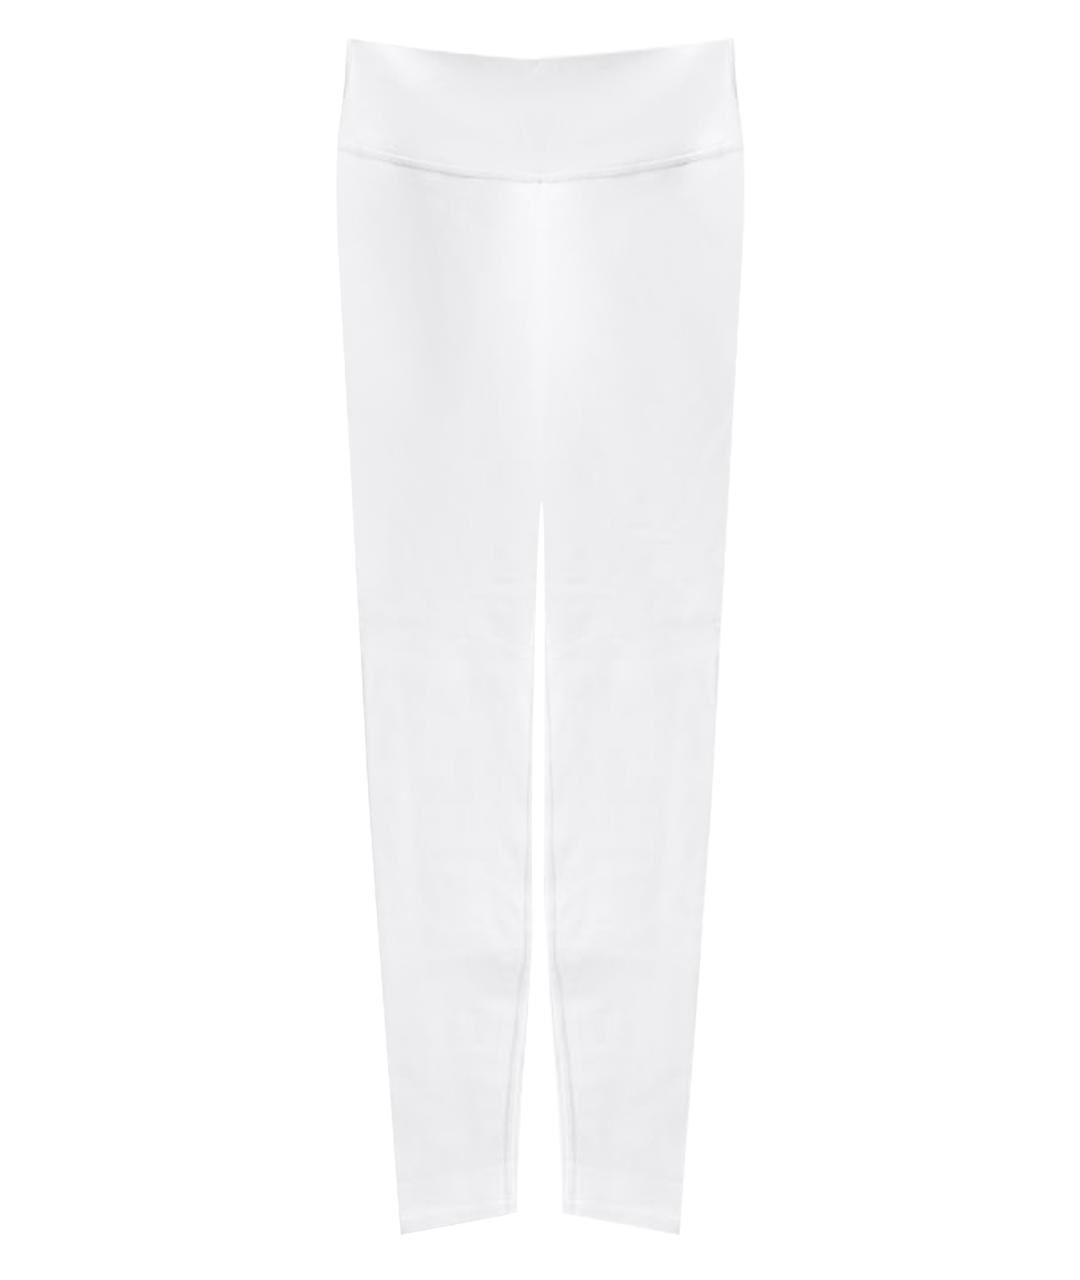 ALO YOGA Белые спортивные брюки и шорты, фото 1